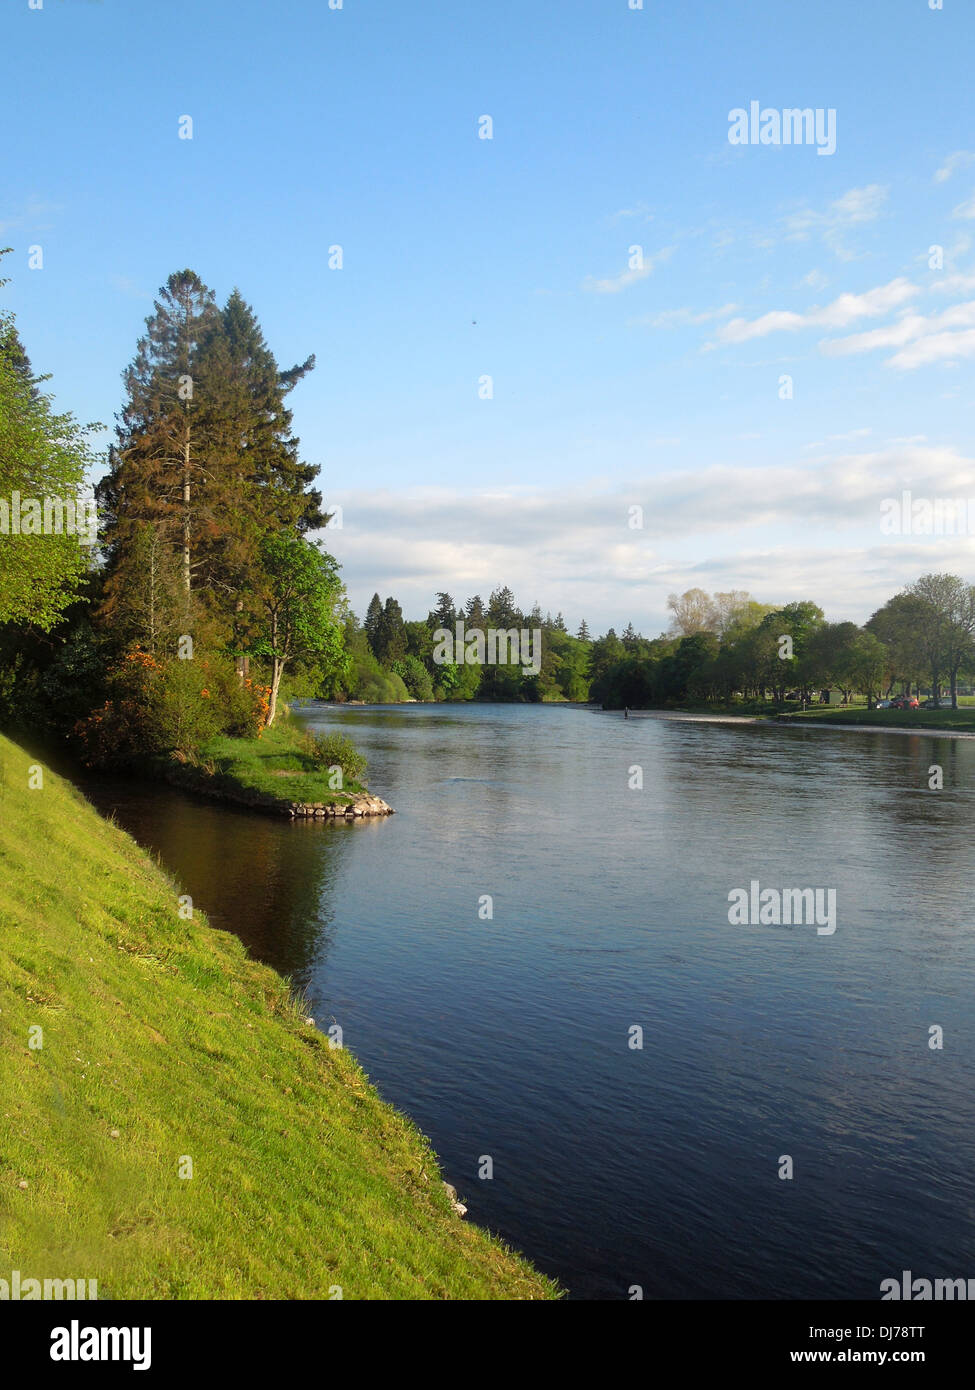 Inverness river, Scotland Stock Photo